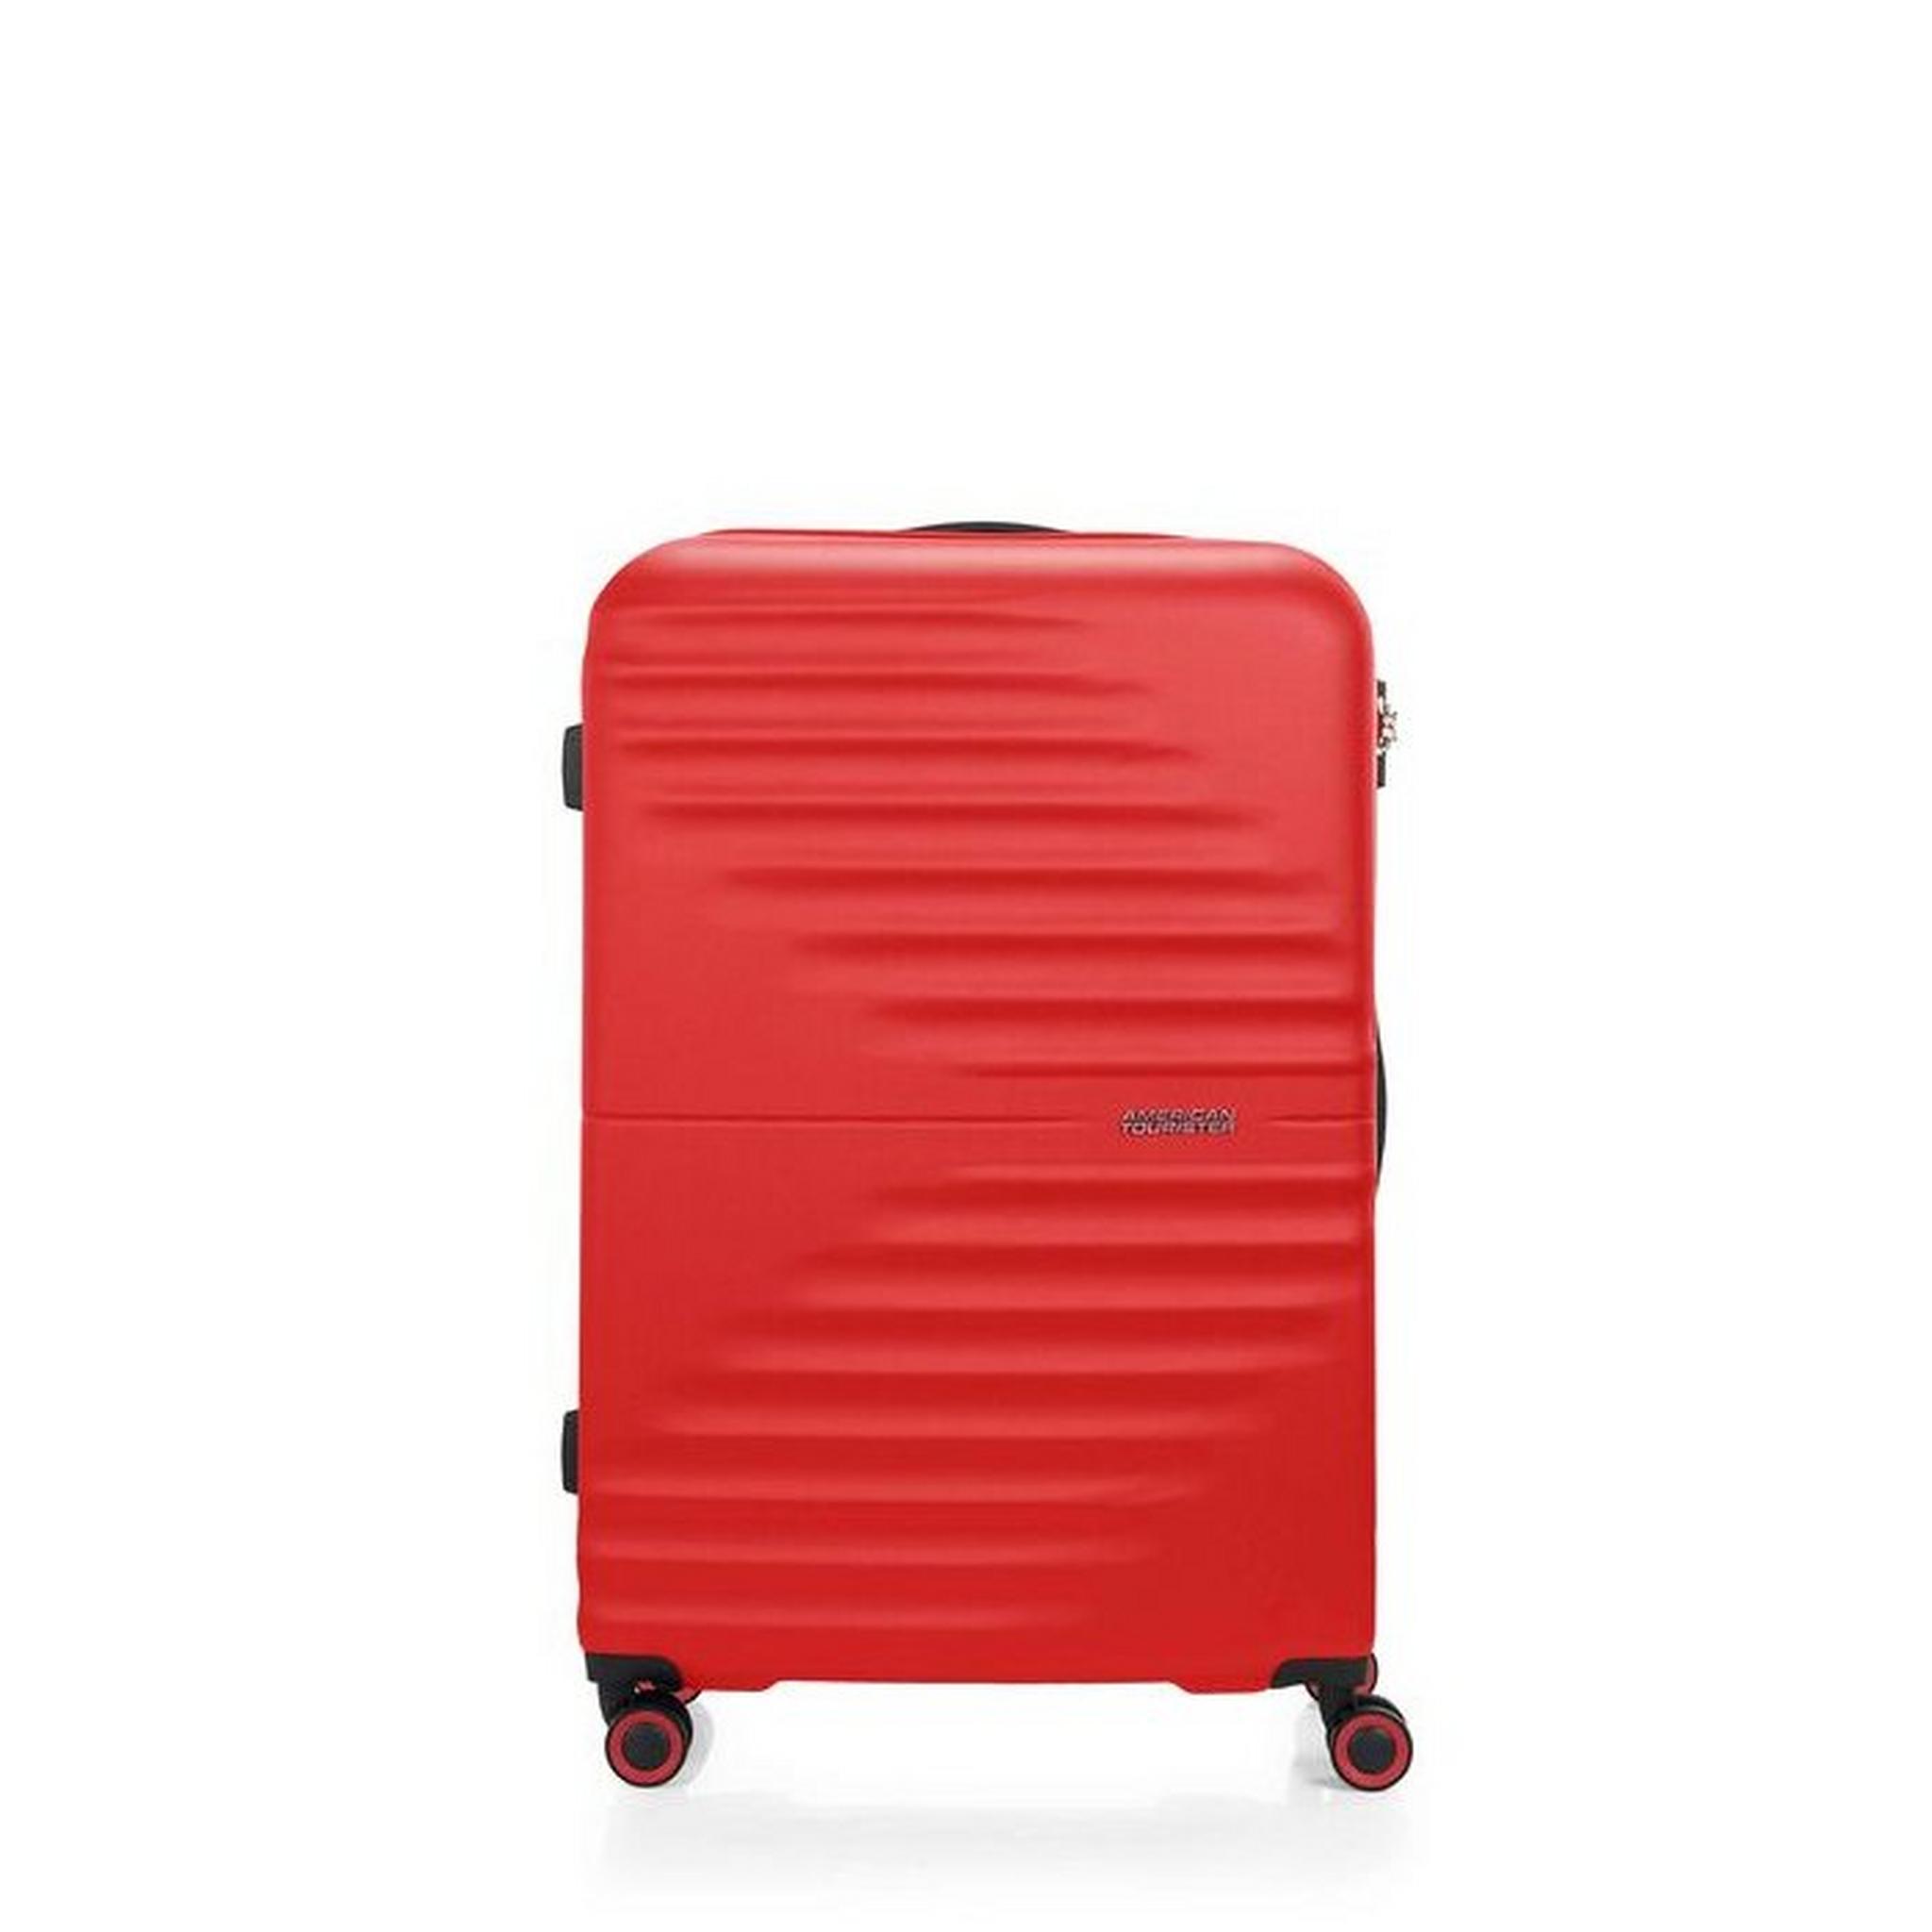 حقيبة سفر تويست ويفز بجوانب صلبة وعجلات دوارة  77سم، QC6X00008 - أحمر فيفيد